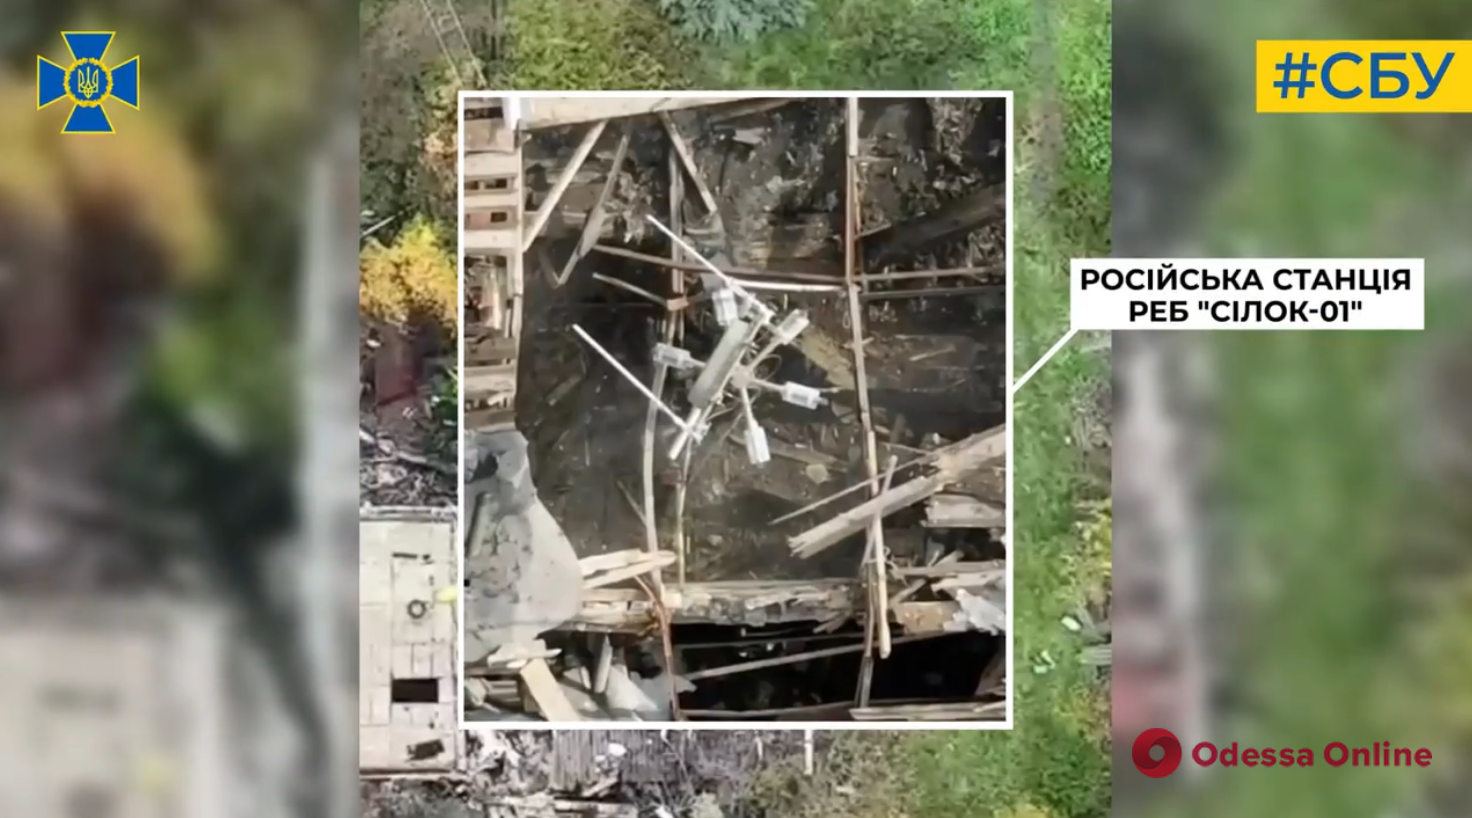 Военные контрразведчики СБУ с ударного дрона уничтожили российскую станцию ​​по борьбе с беспилотниками «Силок-01» (видео)